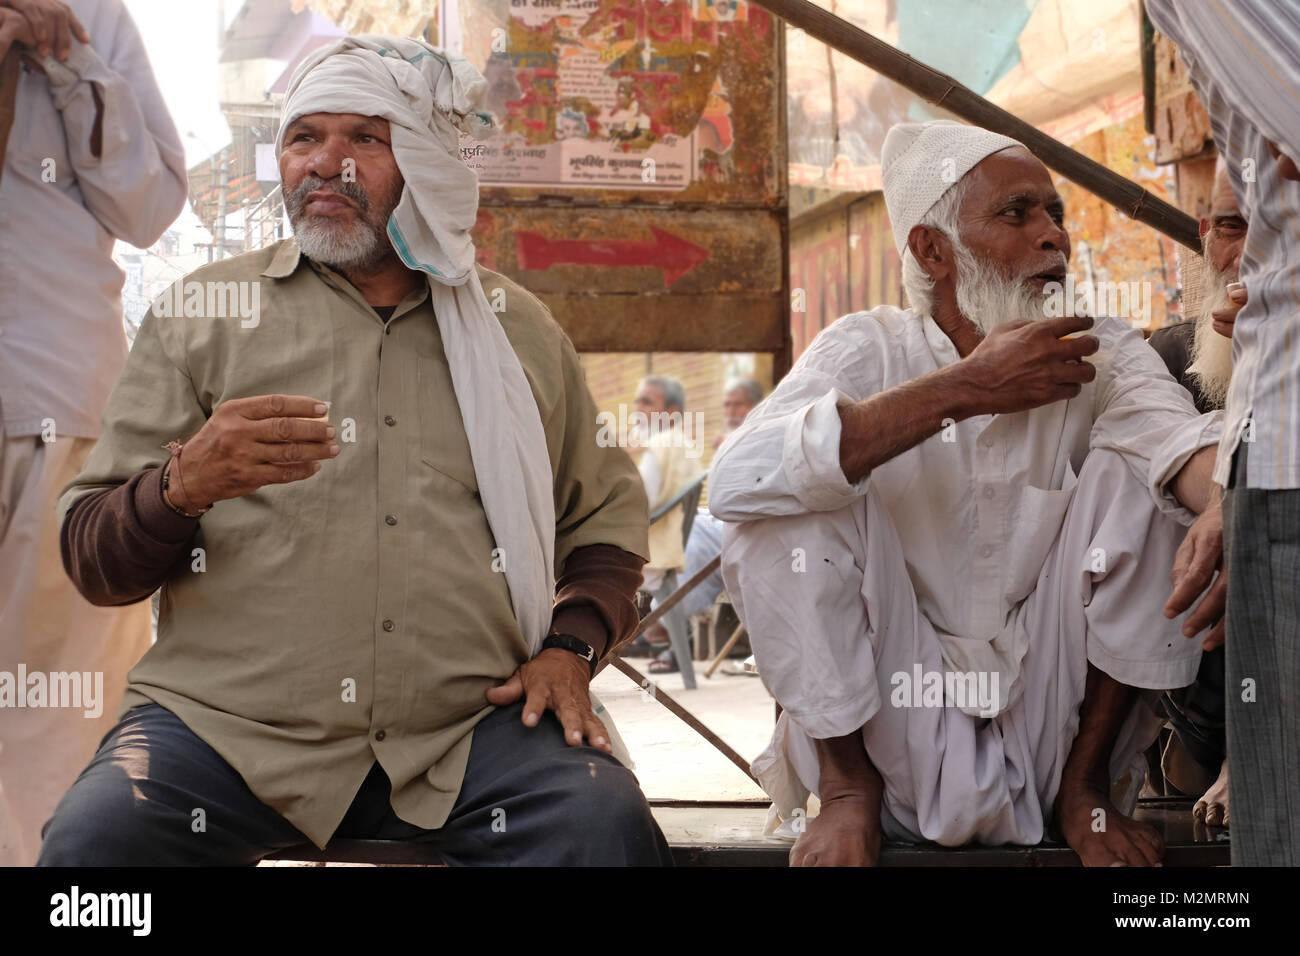 Deux hommes musulmans indiens assis à un chai (thé), wc séparés, l'Inde Banque D'Images